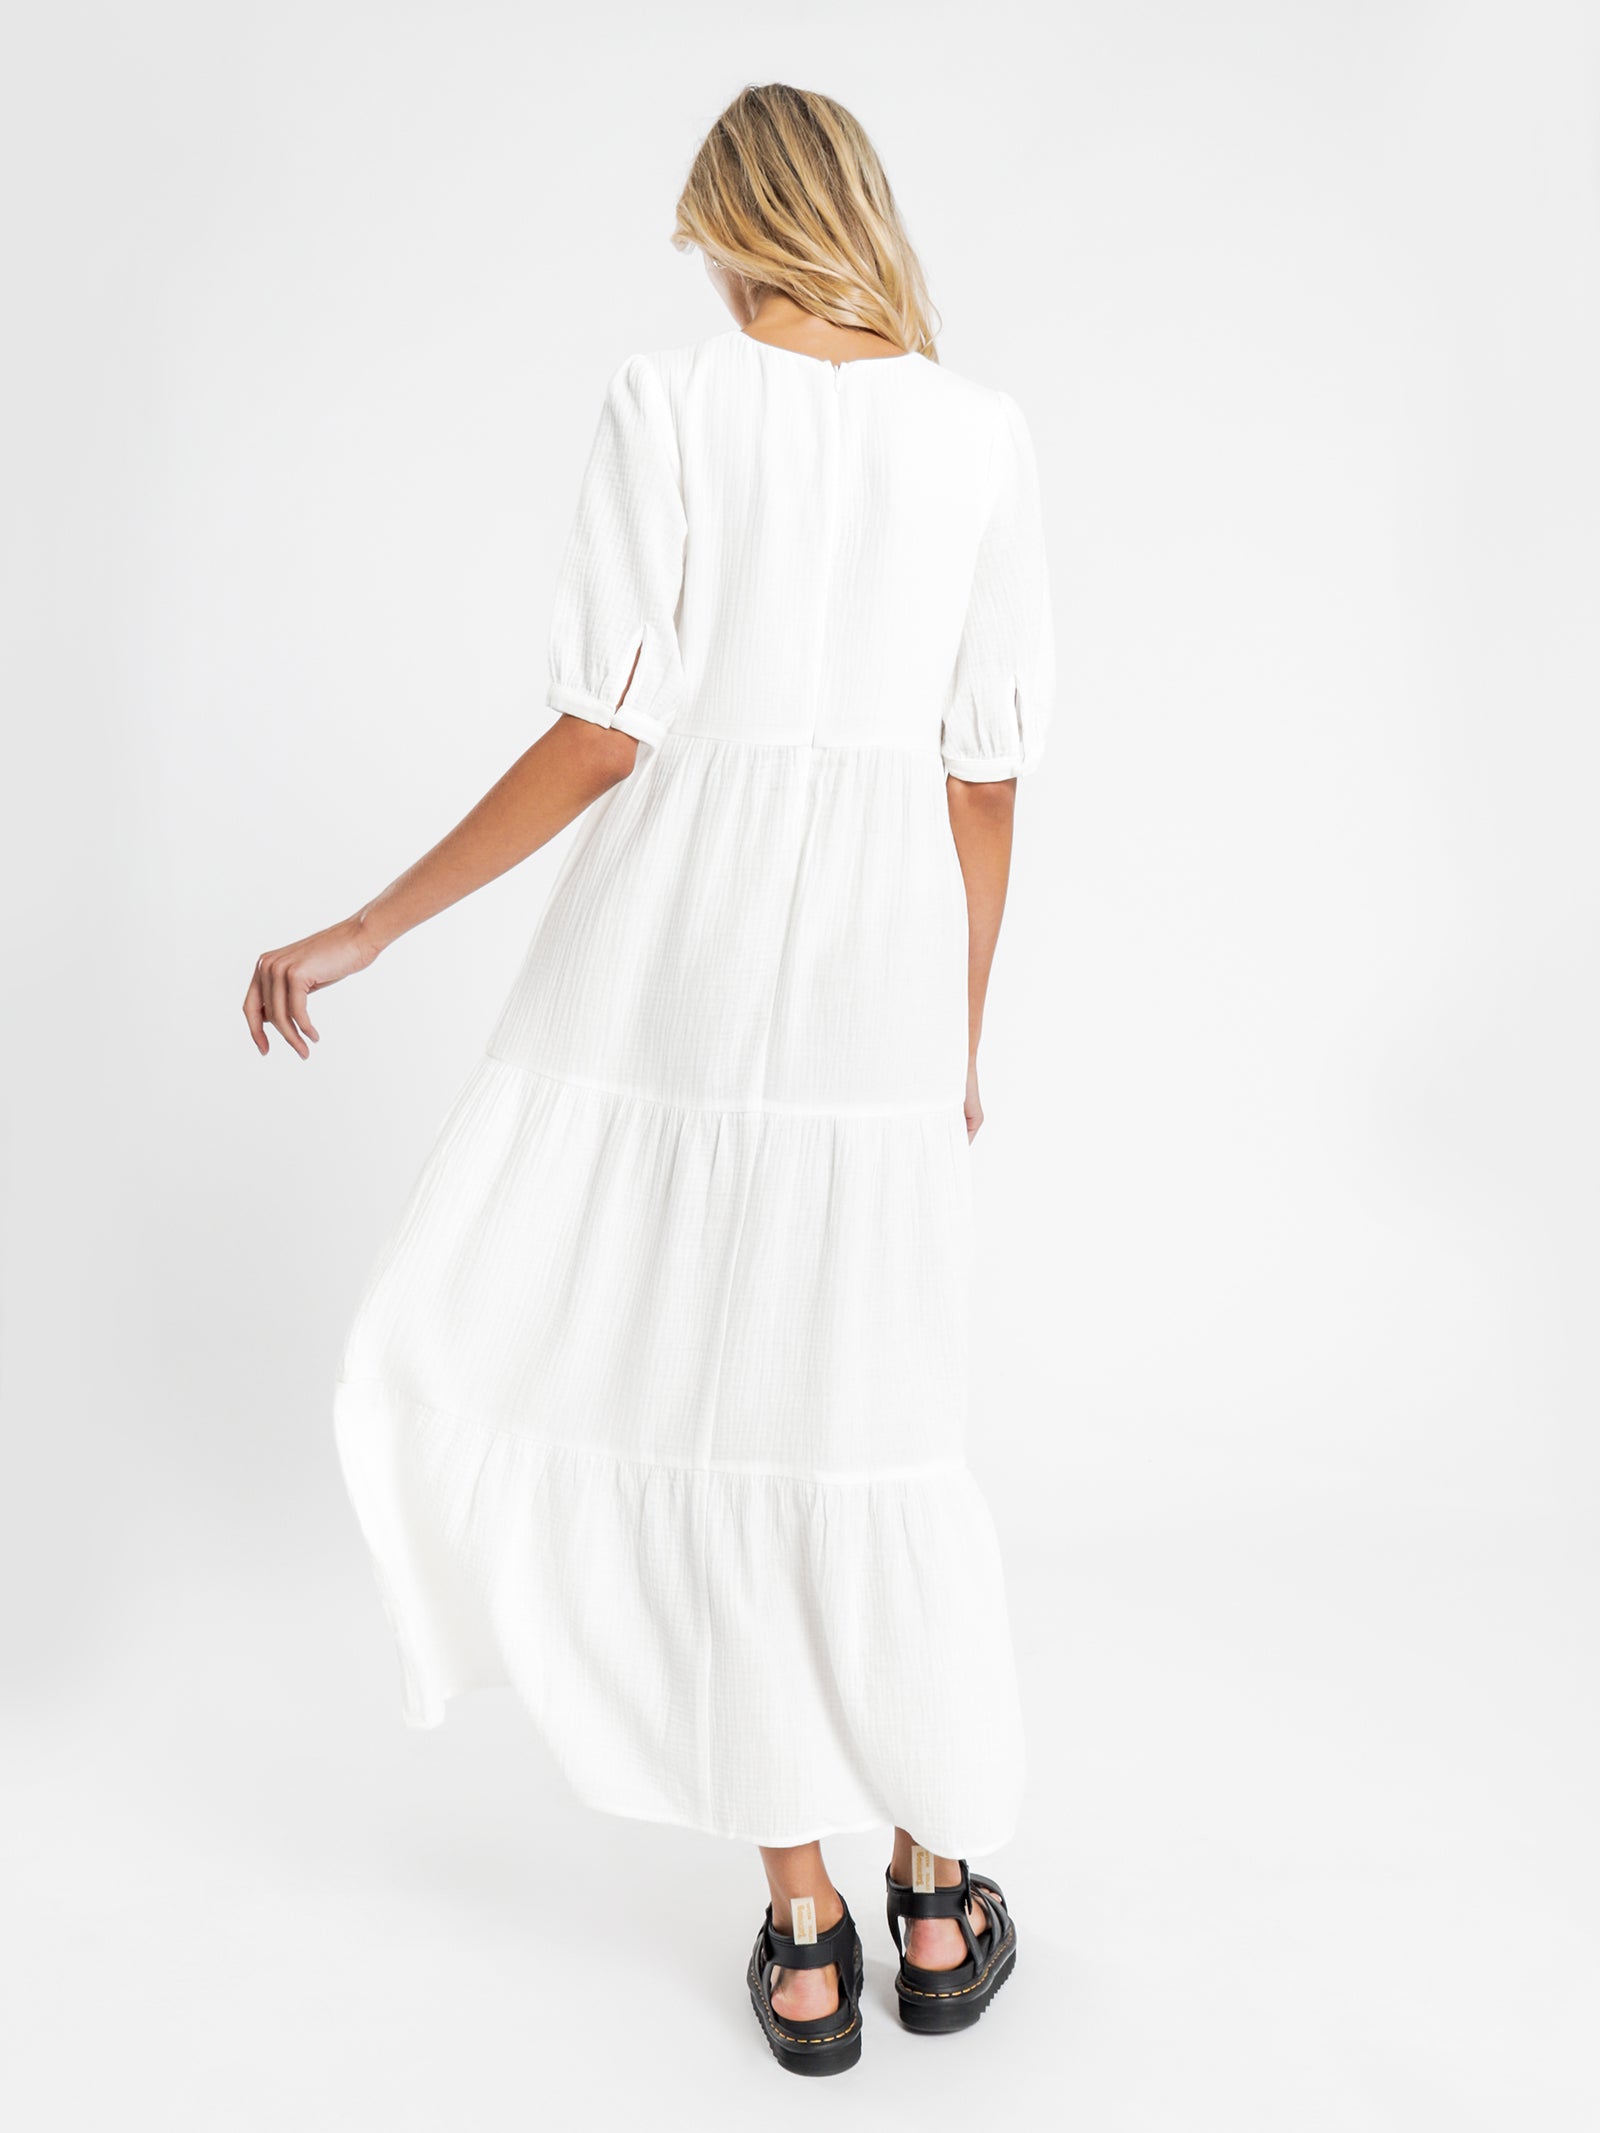 Verona Tier Maxi Dress in White